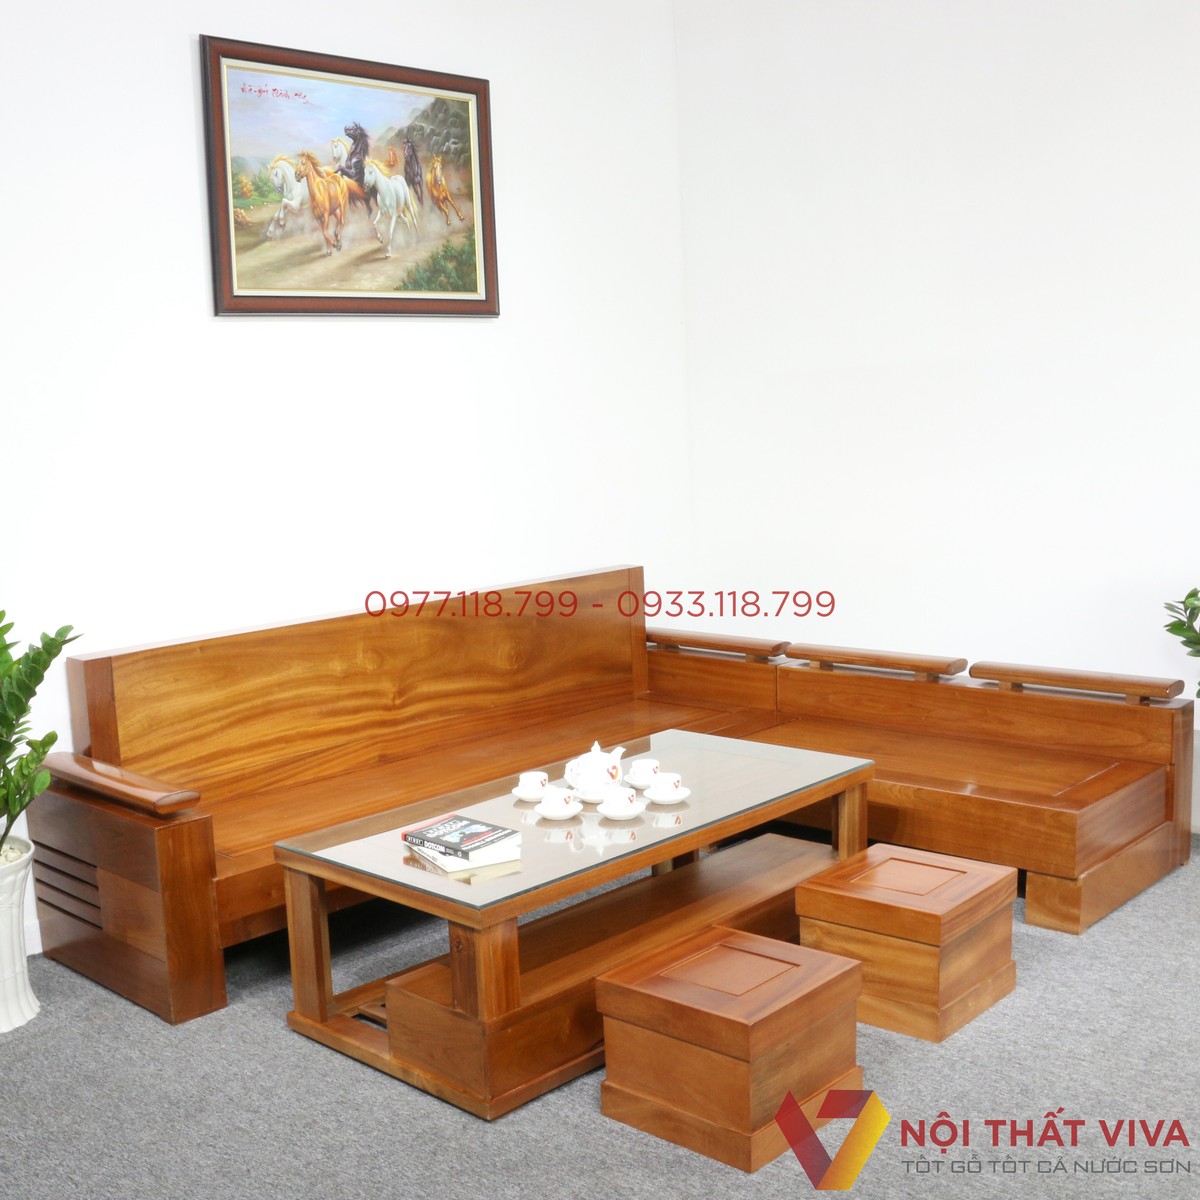 TOP bàn ghế gỗ phòng khách giá 20 triệu trở lên được mua nhiều nhất hiện nay